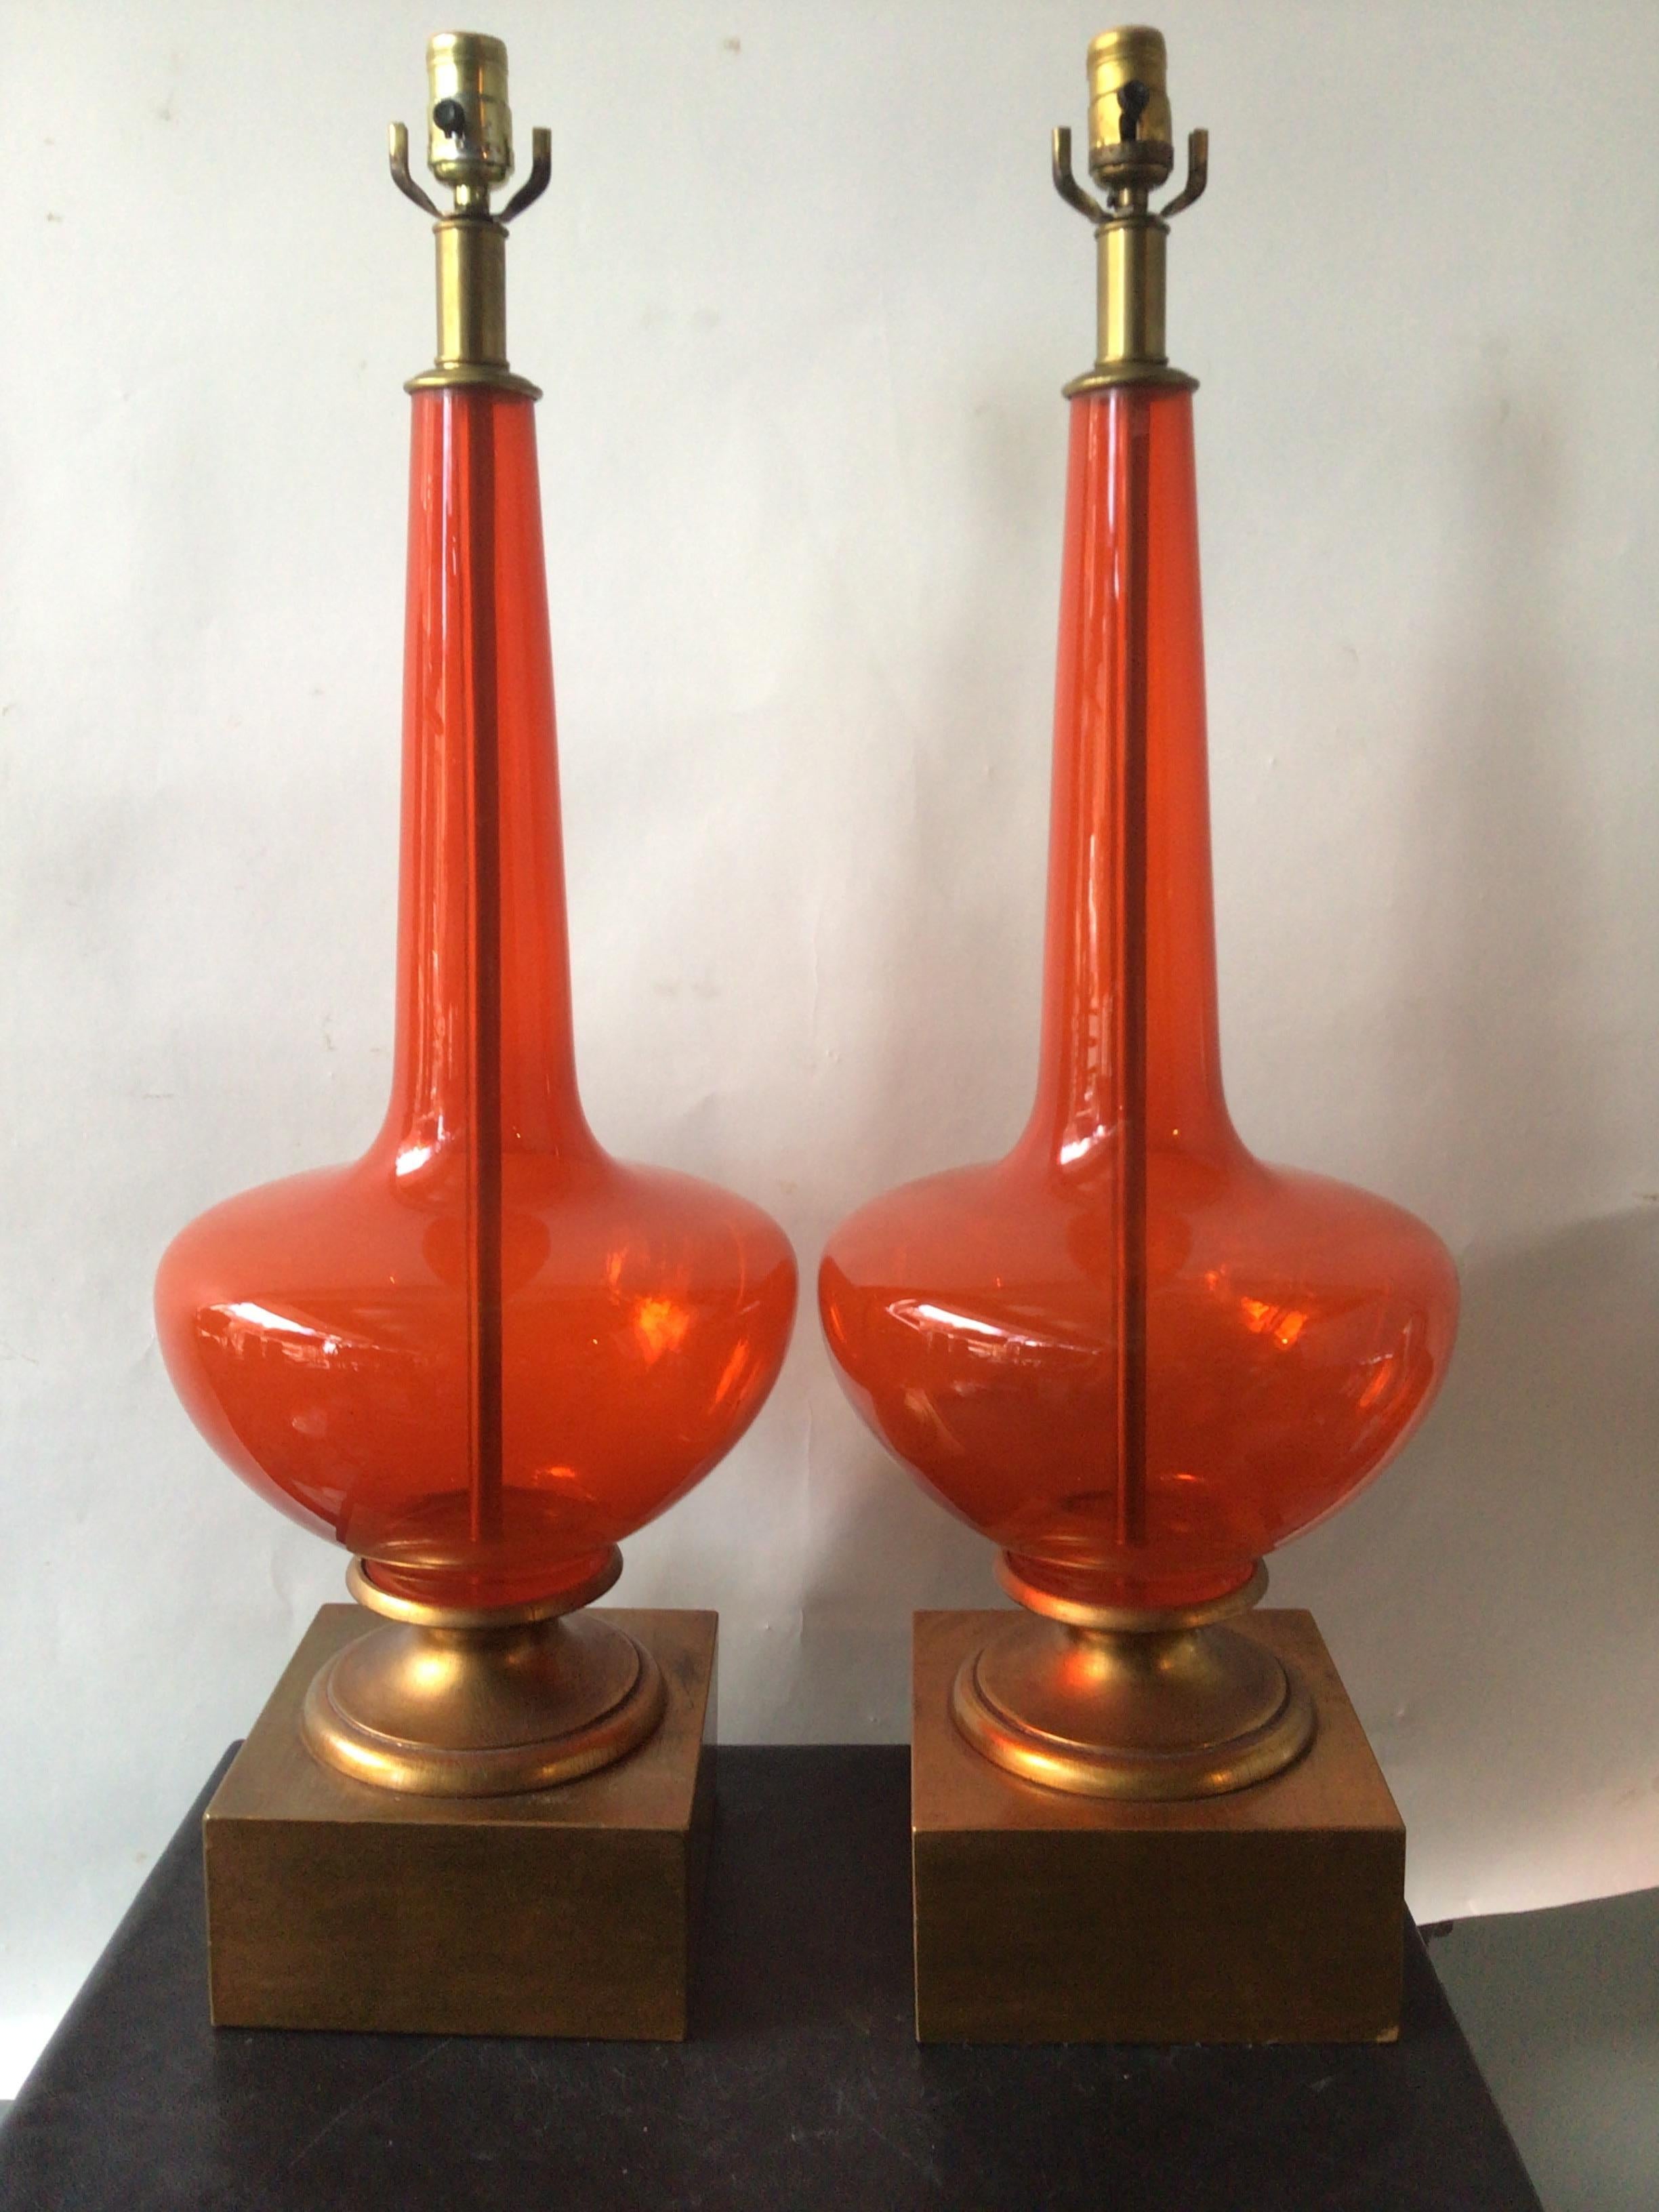 Grande paire de lampes en verre de Murano orange des années 1960 sur des bases en bois doré. Dans un appartement de luxe à New York.